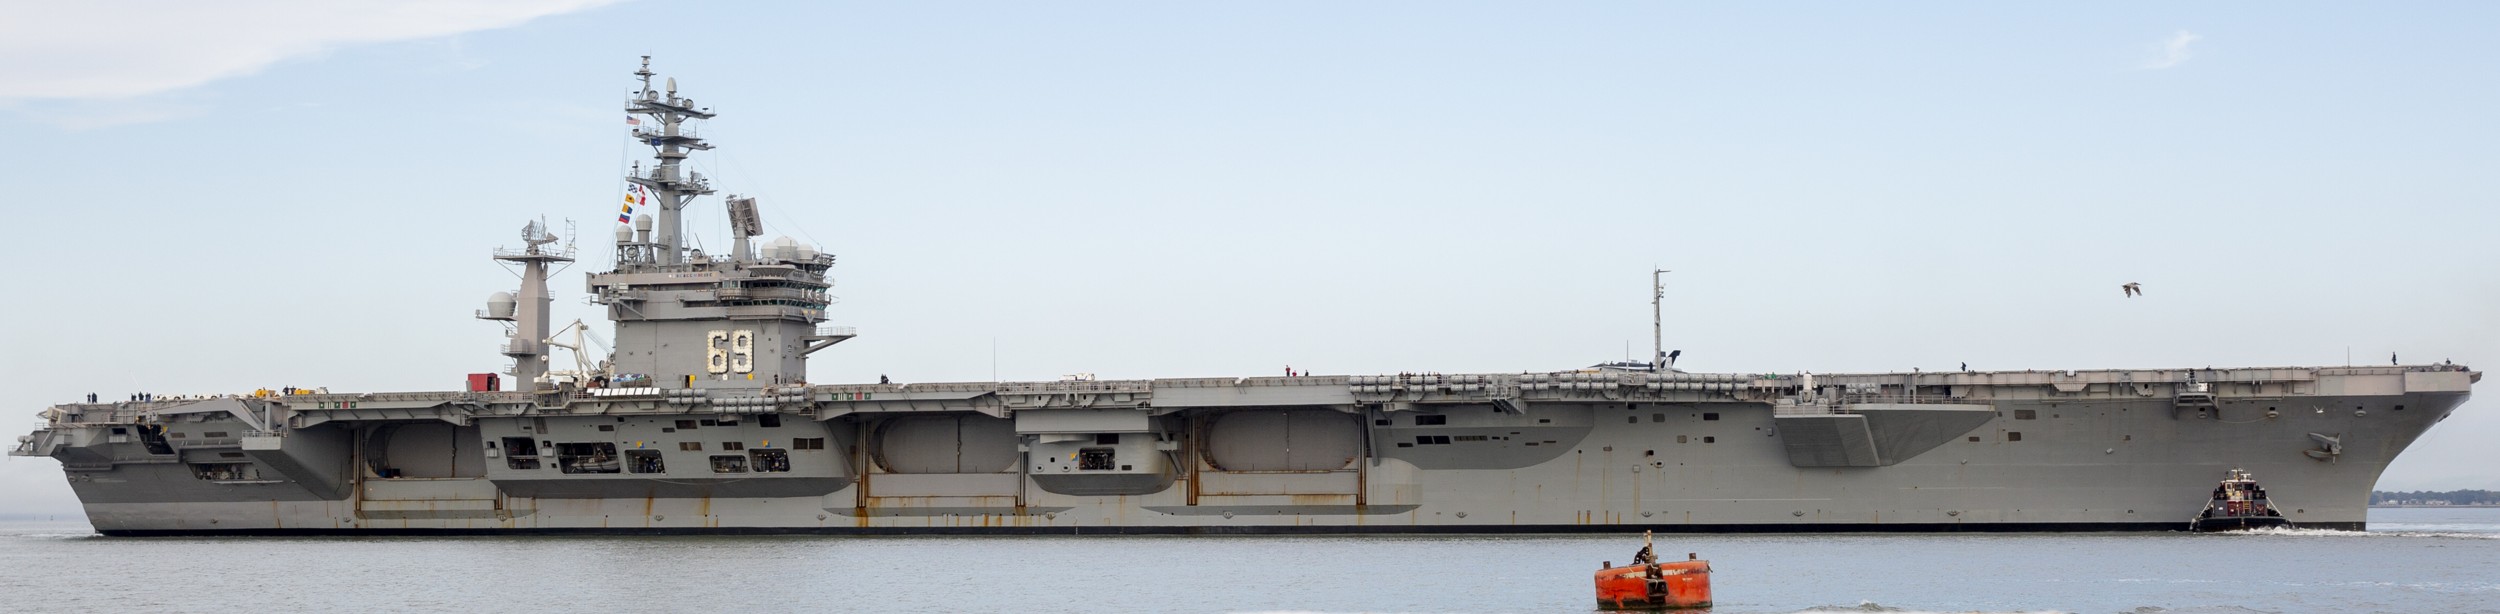 cvn-69 uss dwight d. eisenhower aircraft carrier us navy 448